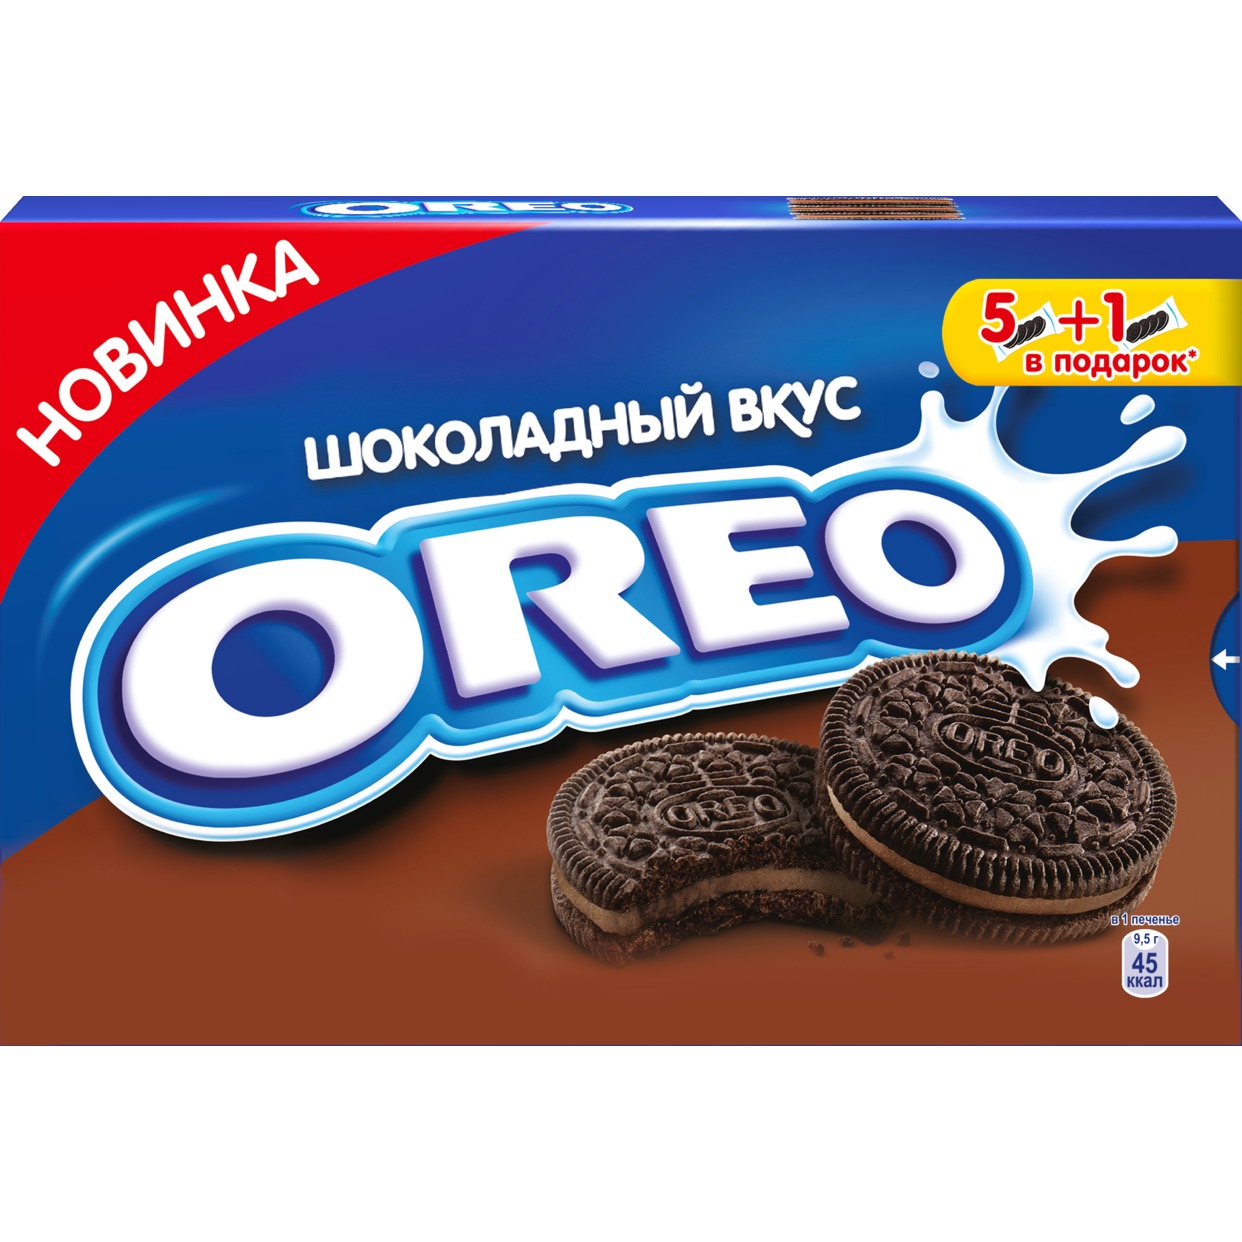 OREO Печенье с какао/нач.вк.шок.228г по акции в Пятерочке